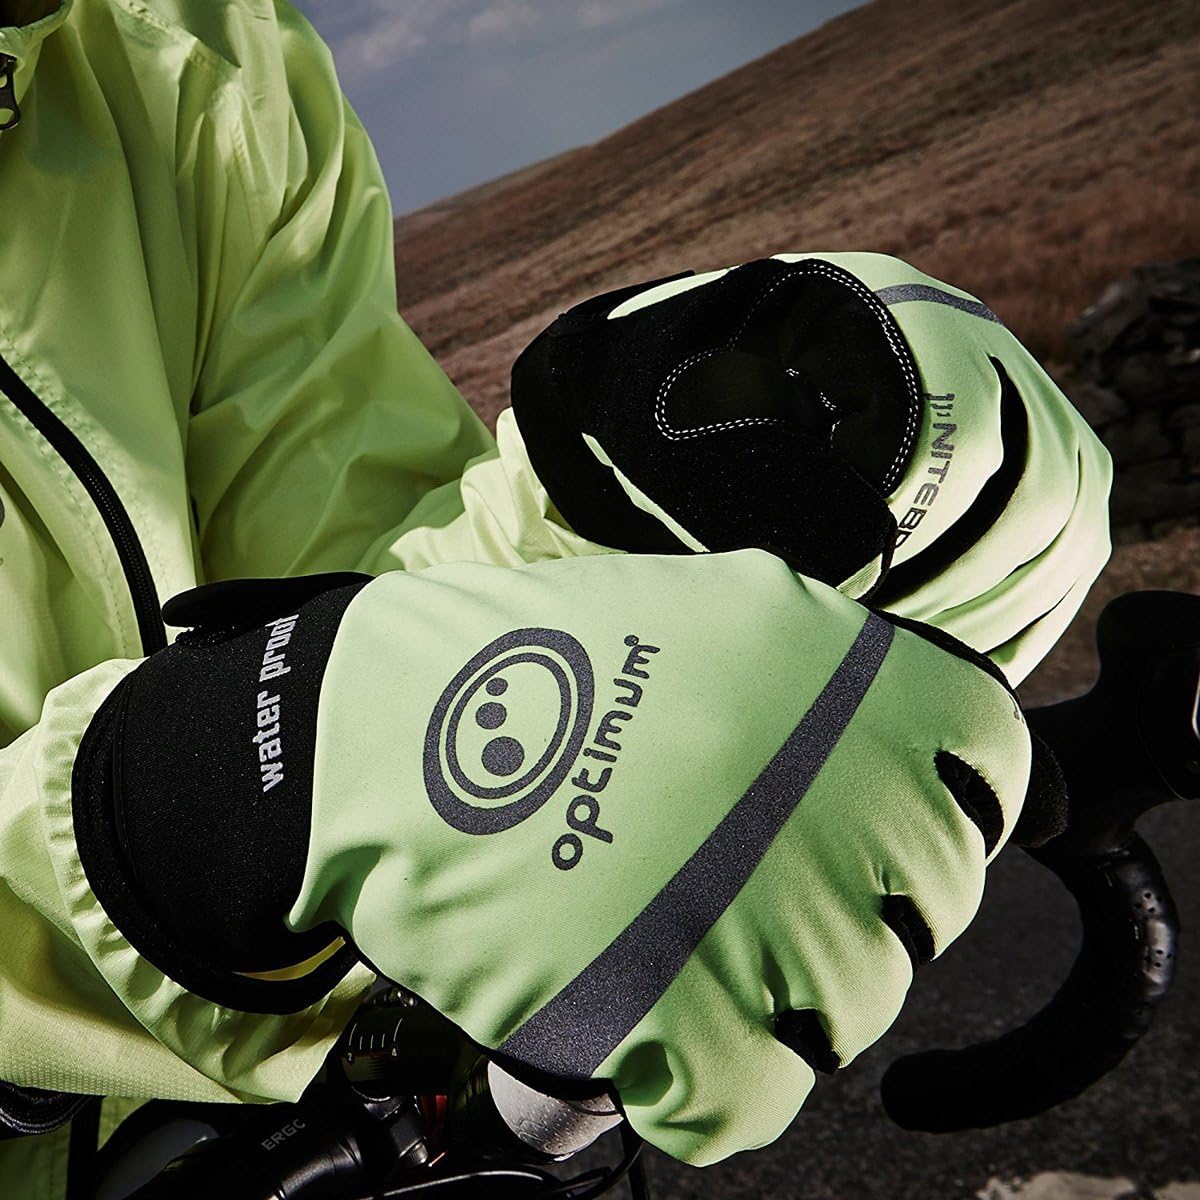 Nitebrite Waterproof Cycling Gloves - Optimum